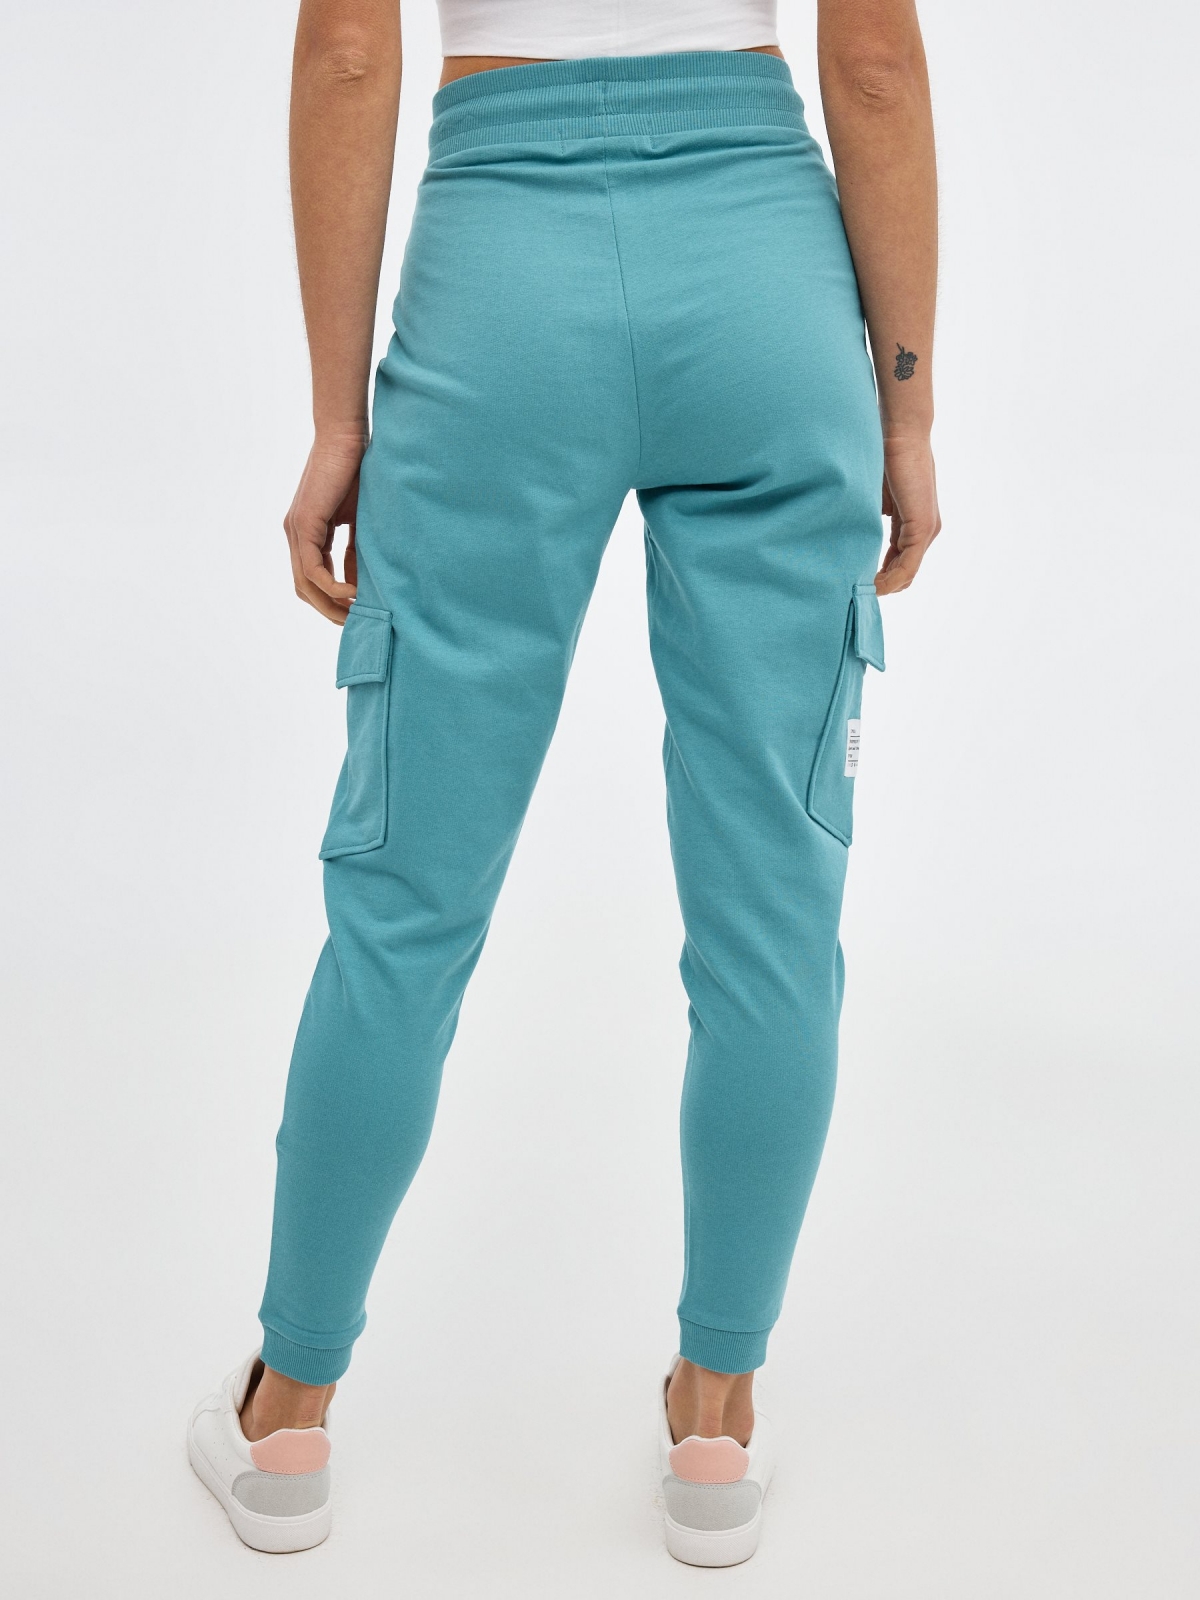 Pantalón jogger de felpa verde azulado vista media trasera